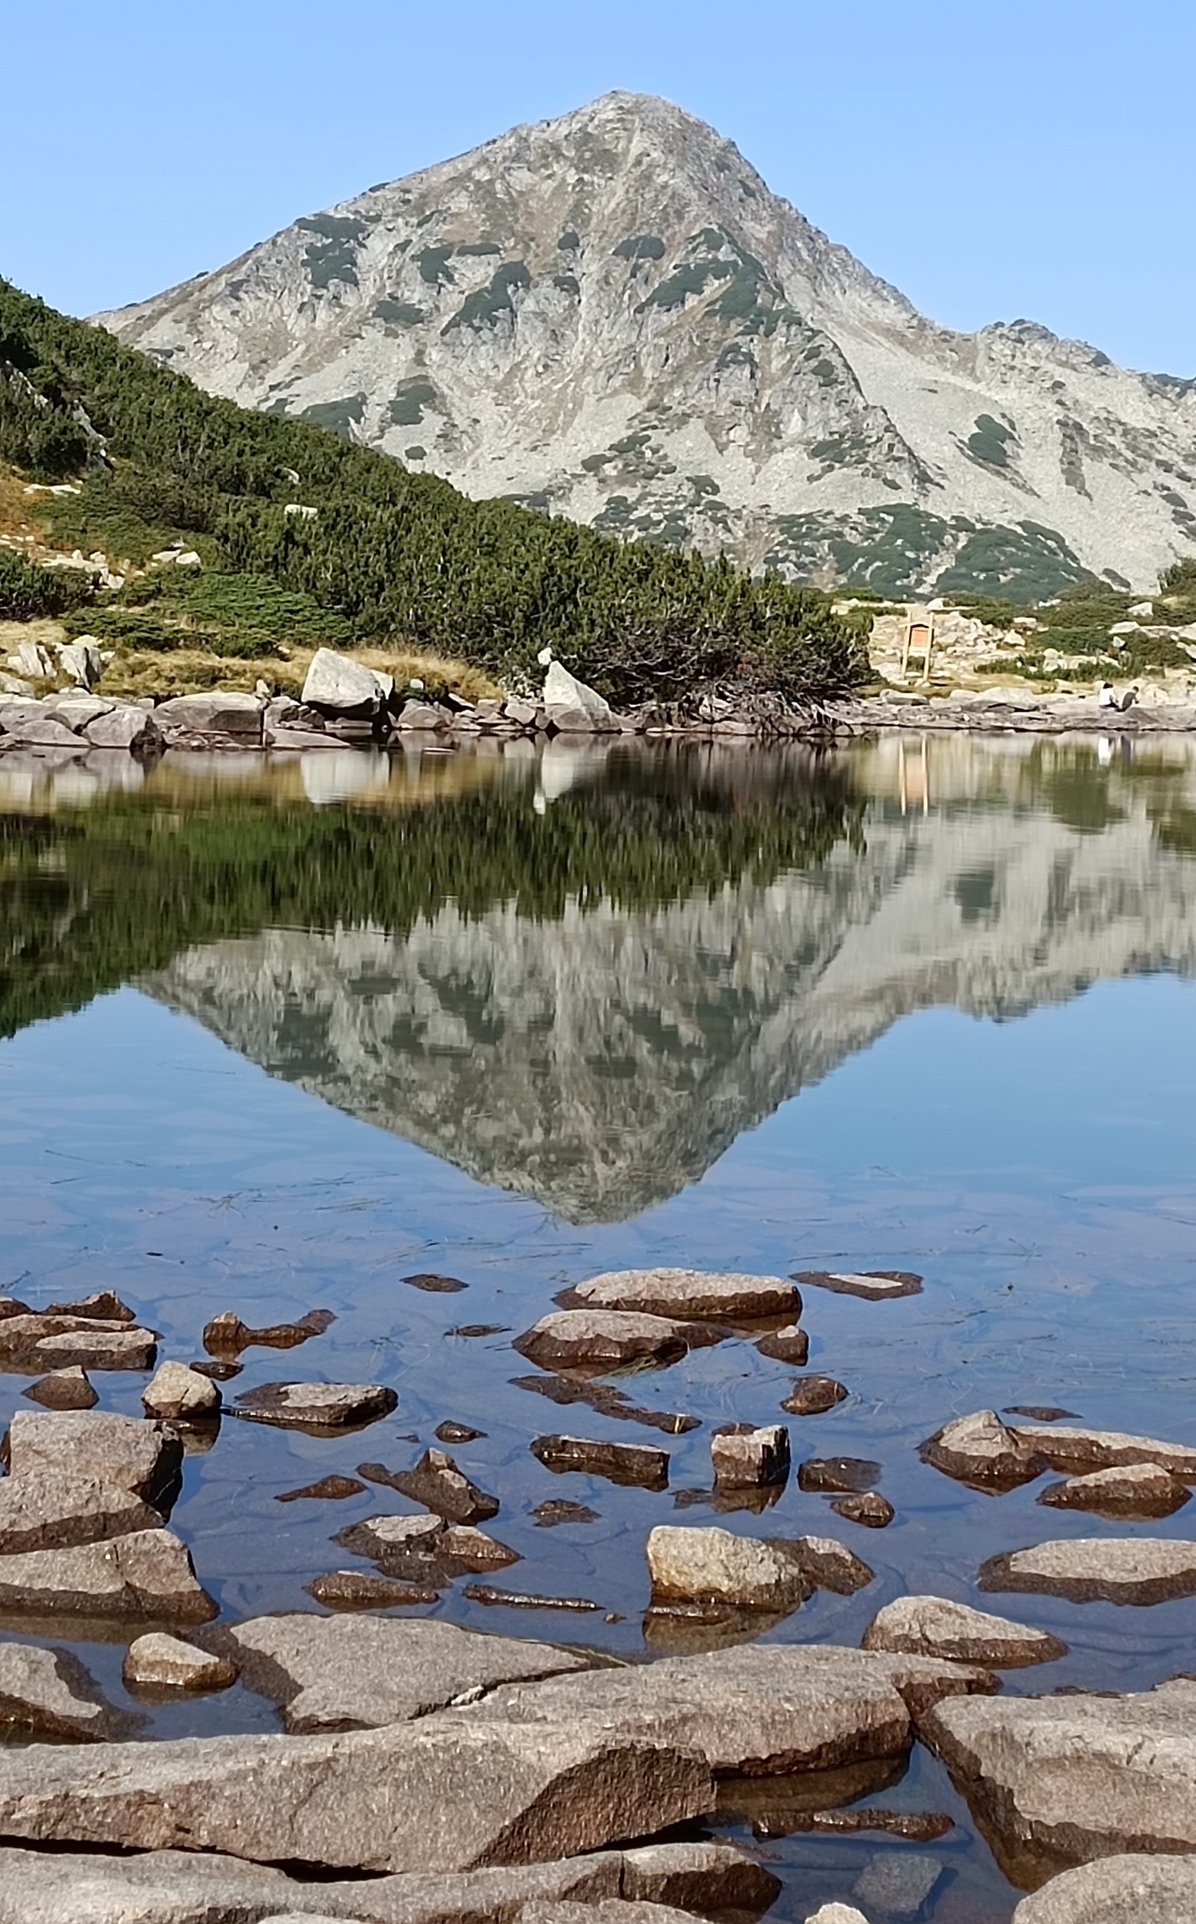 "Гледки за споделяне": Муратов връх, отразен в Жабешкото езеро - конкурс на "24 часа"